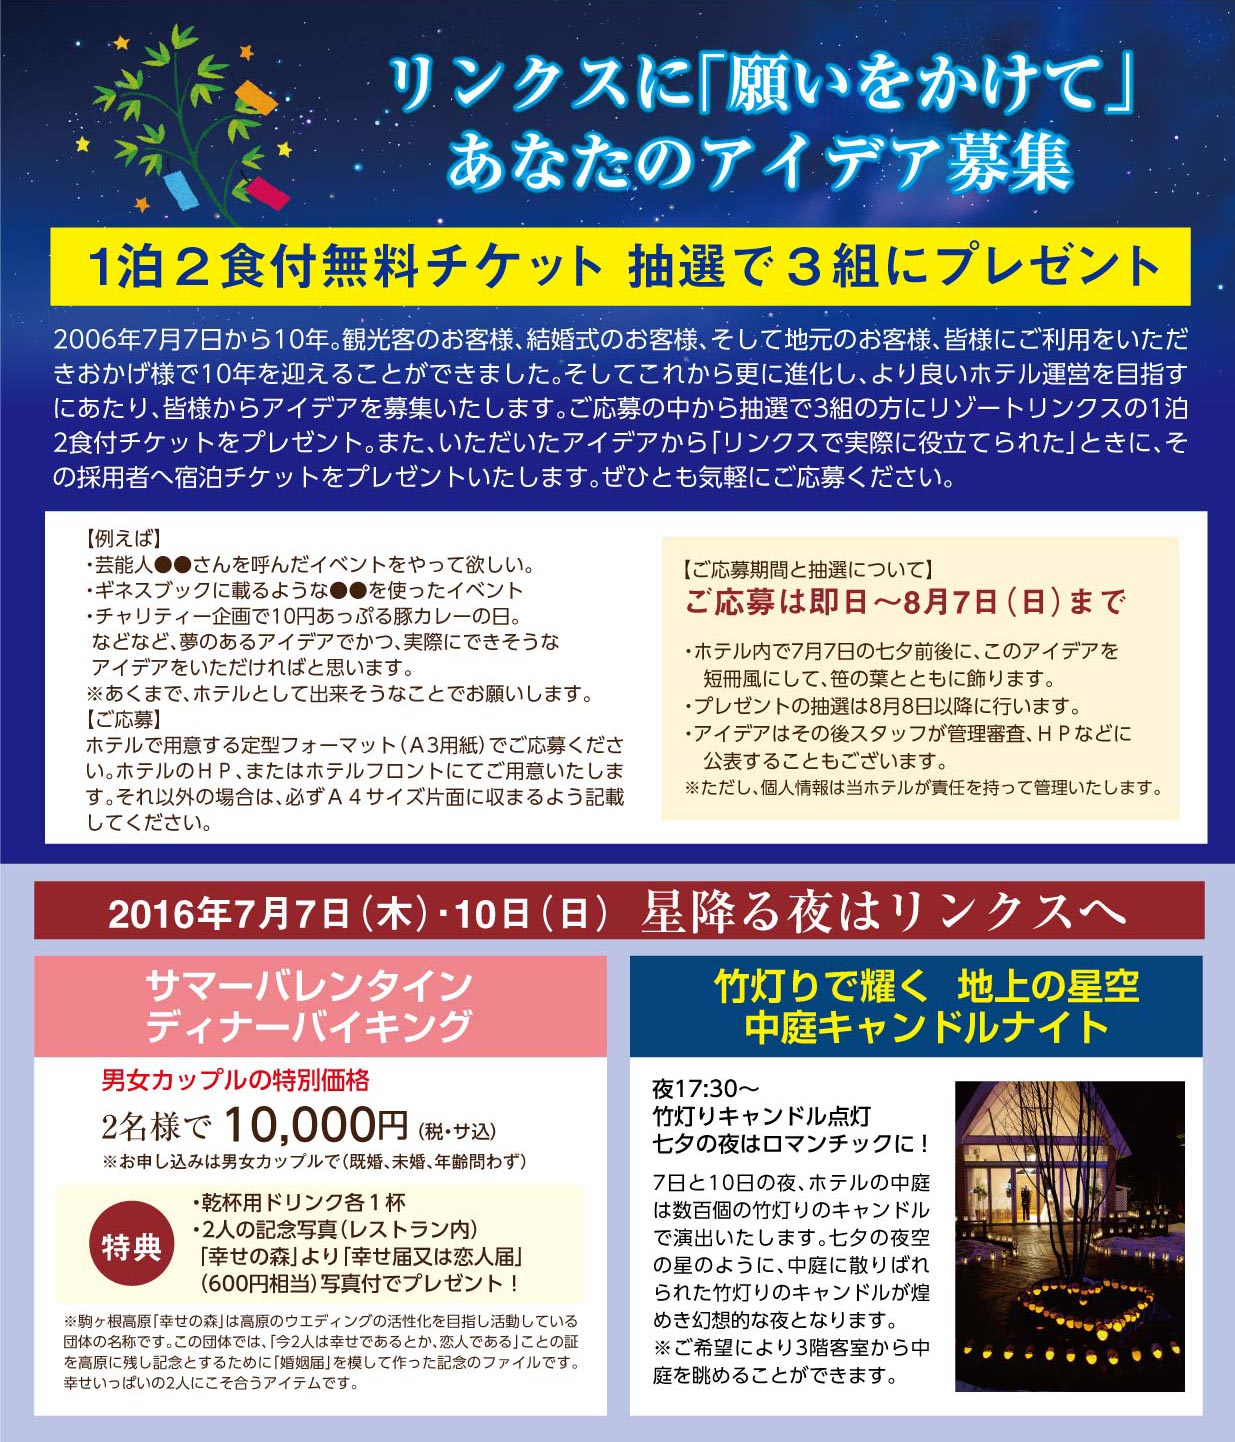 http://www.komagane-linx.co.jp/blogimages/event20160624-1-2.jpg